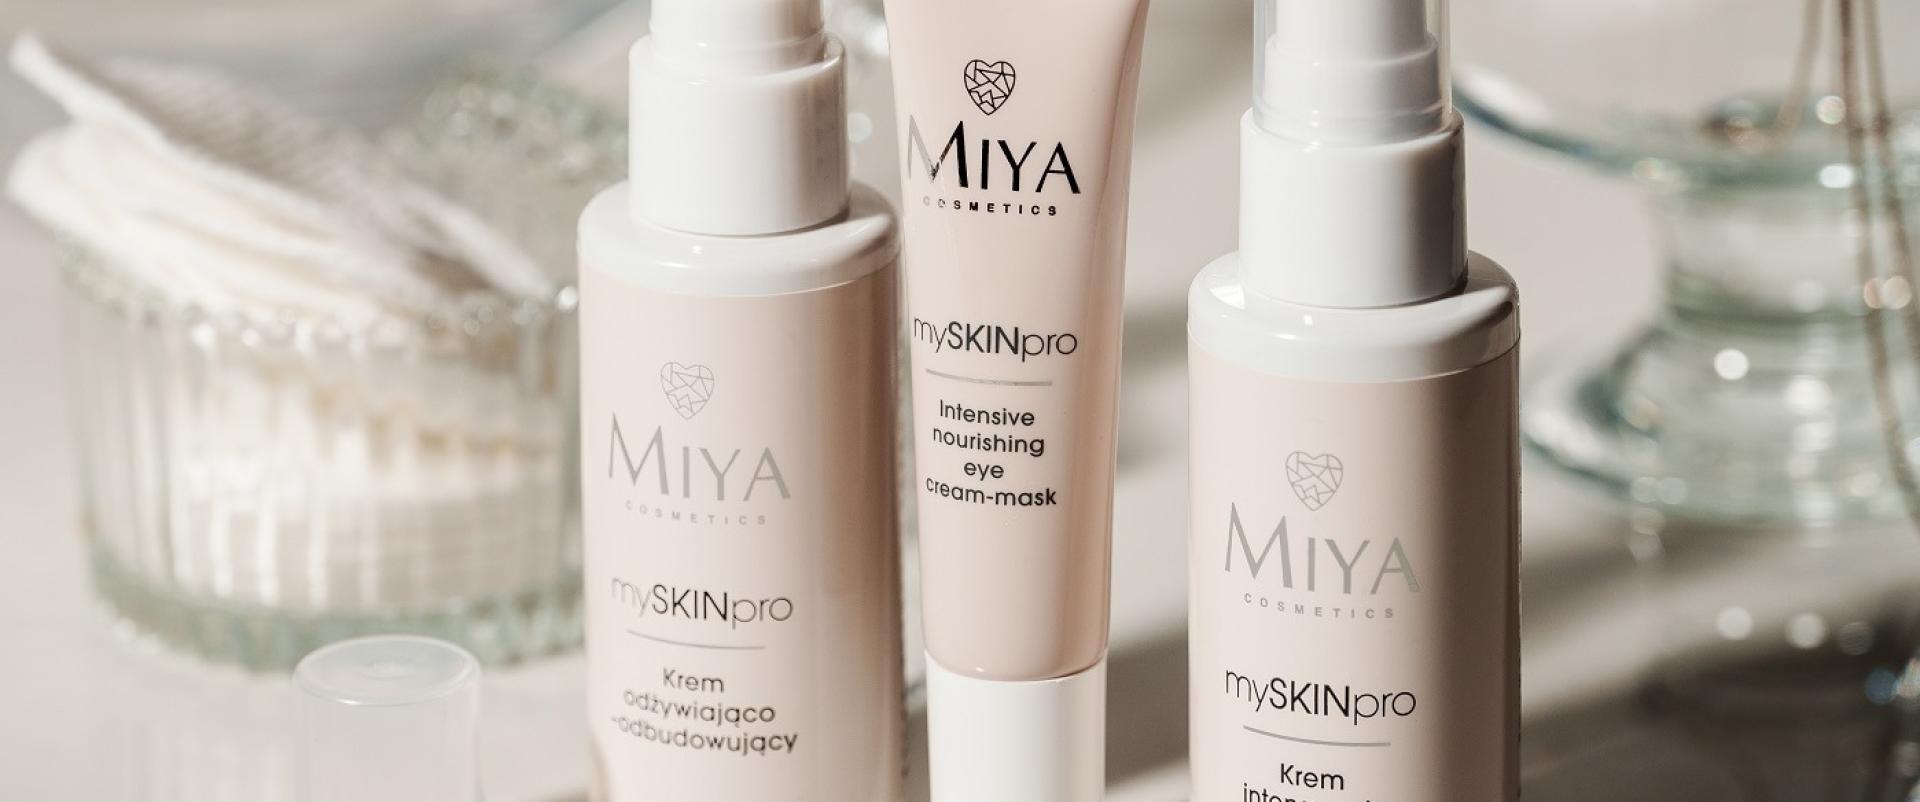 Oferta pracy: Miya Cosmetics - Brand Manager